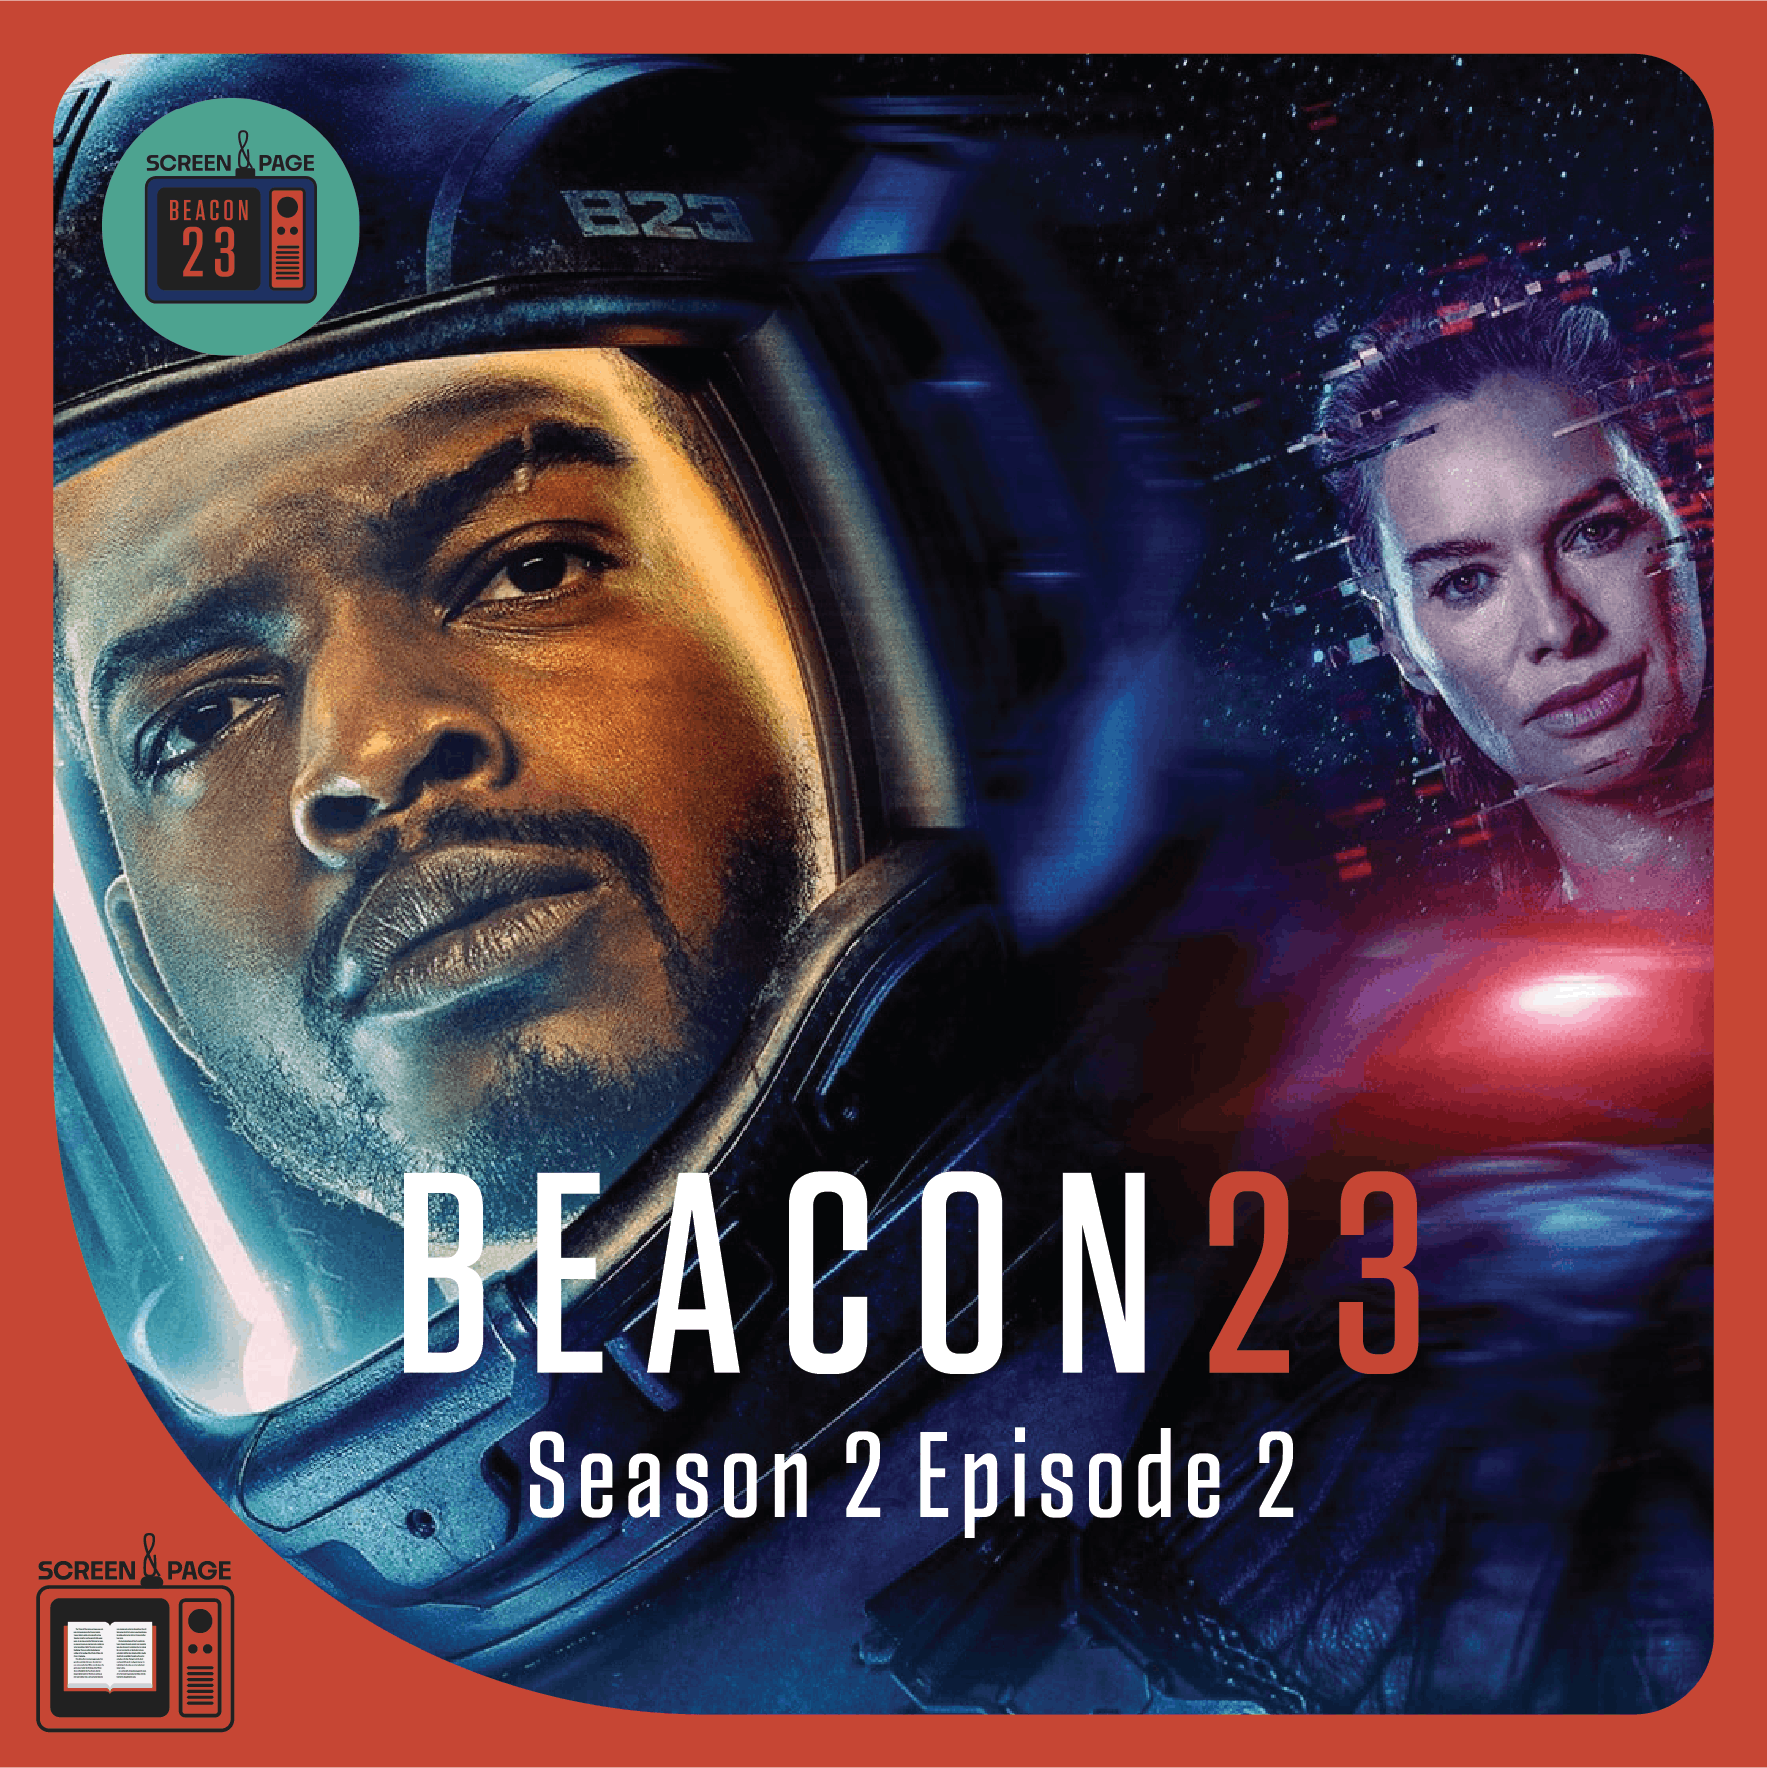 Beacon 23 recap Season 2 Episode 2 "Purgatory"